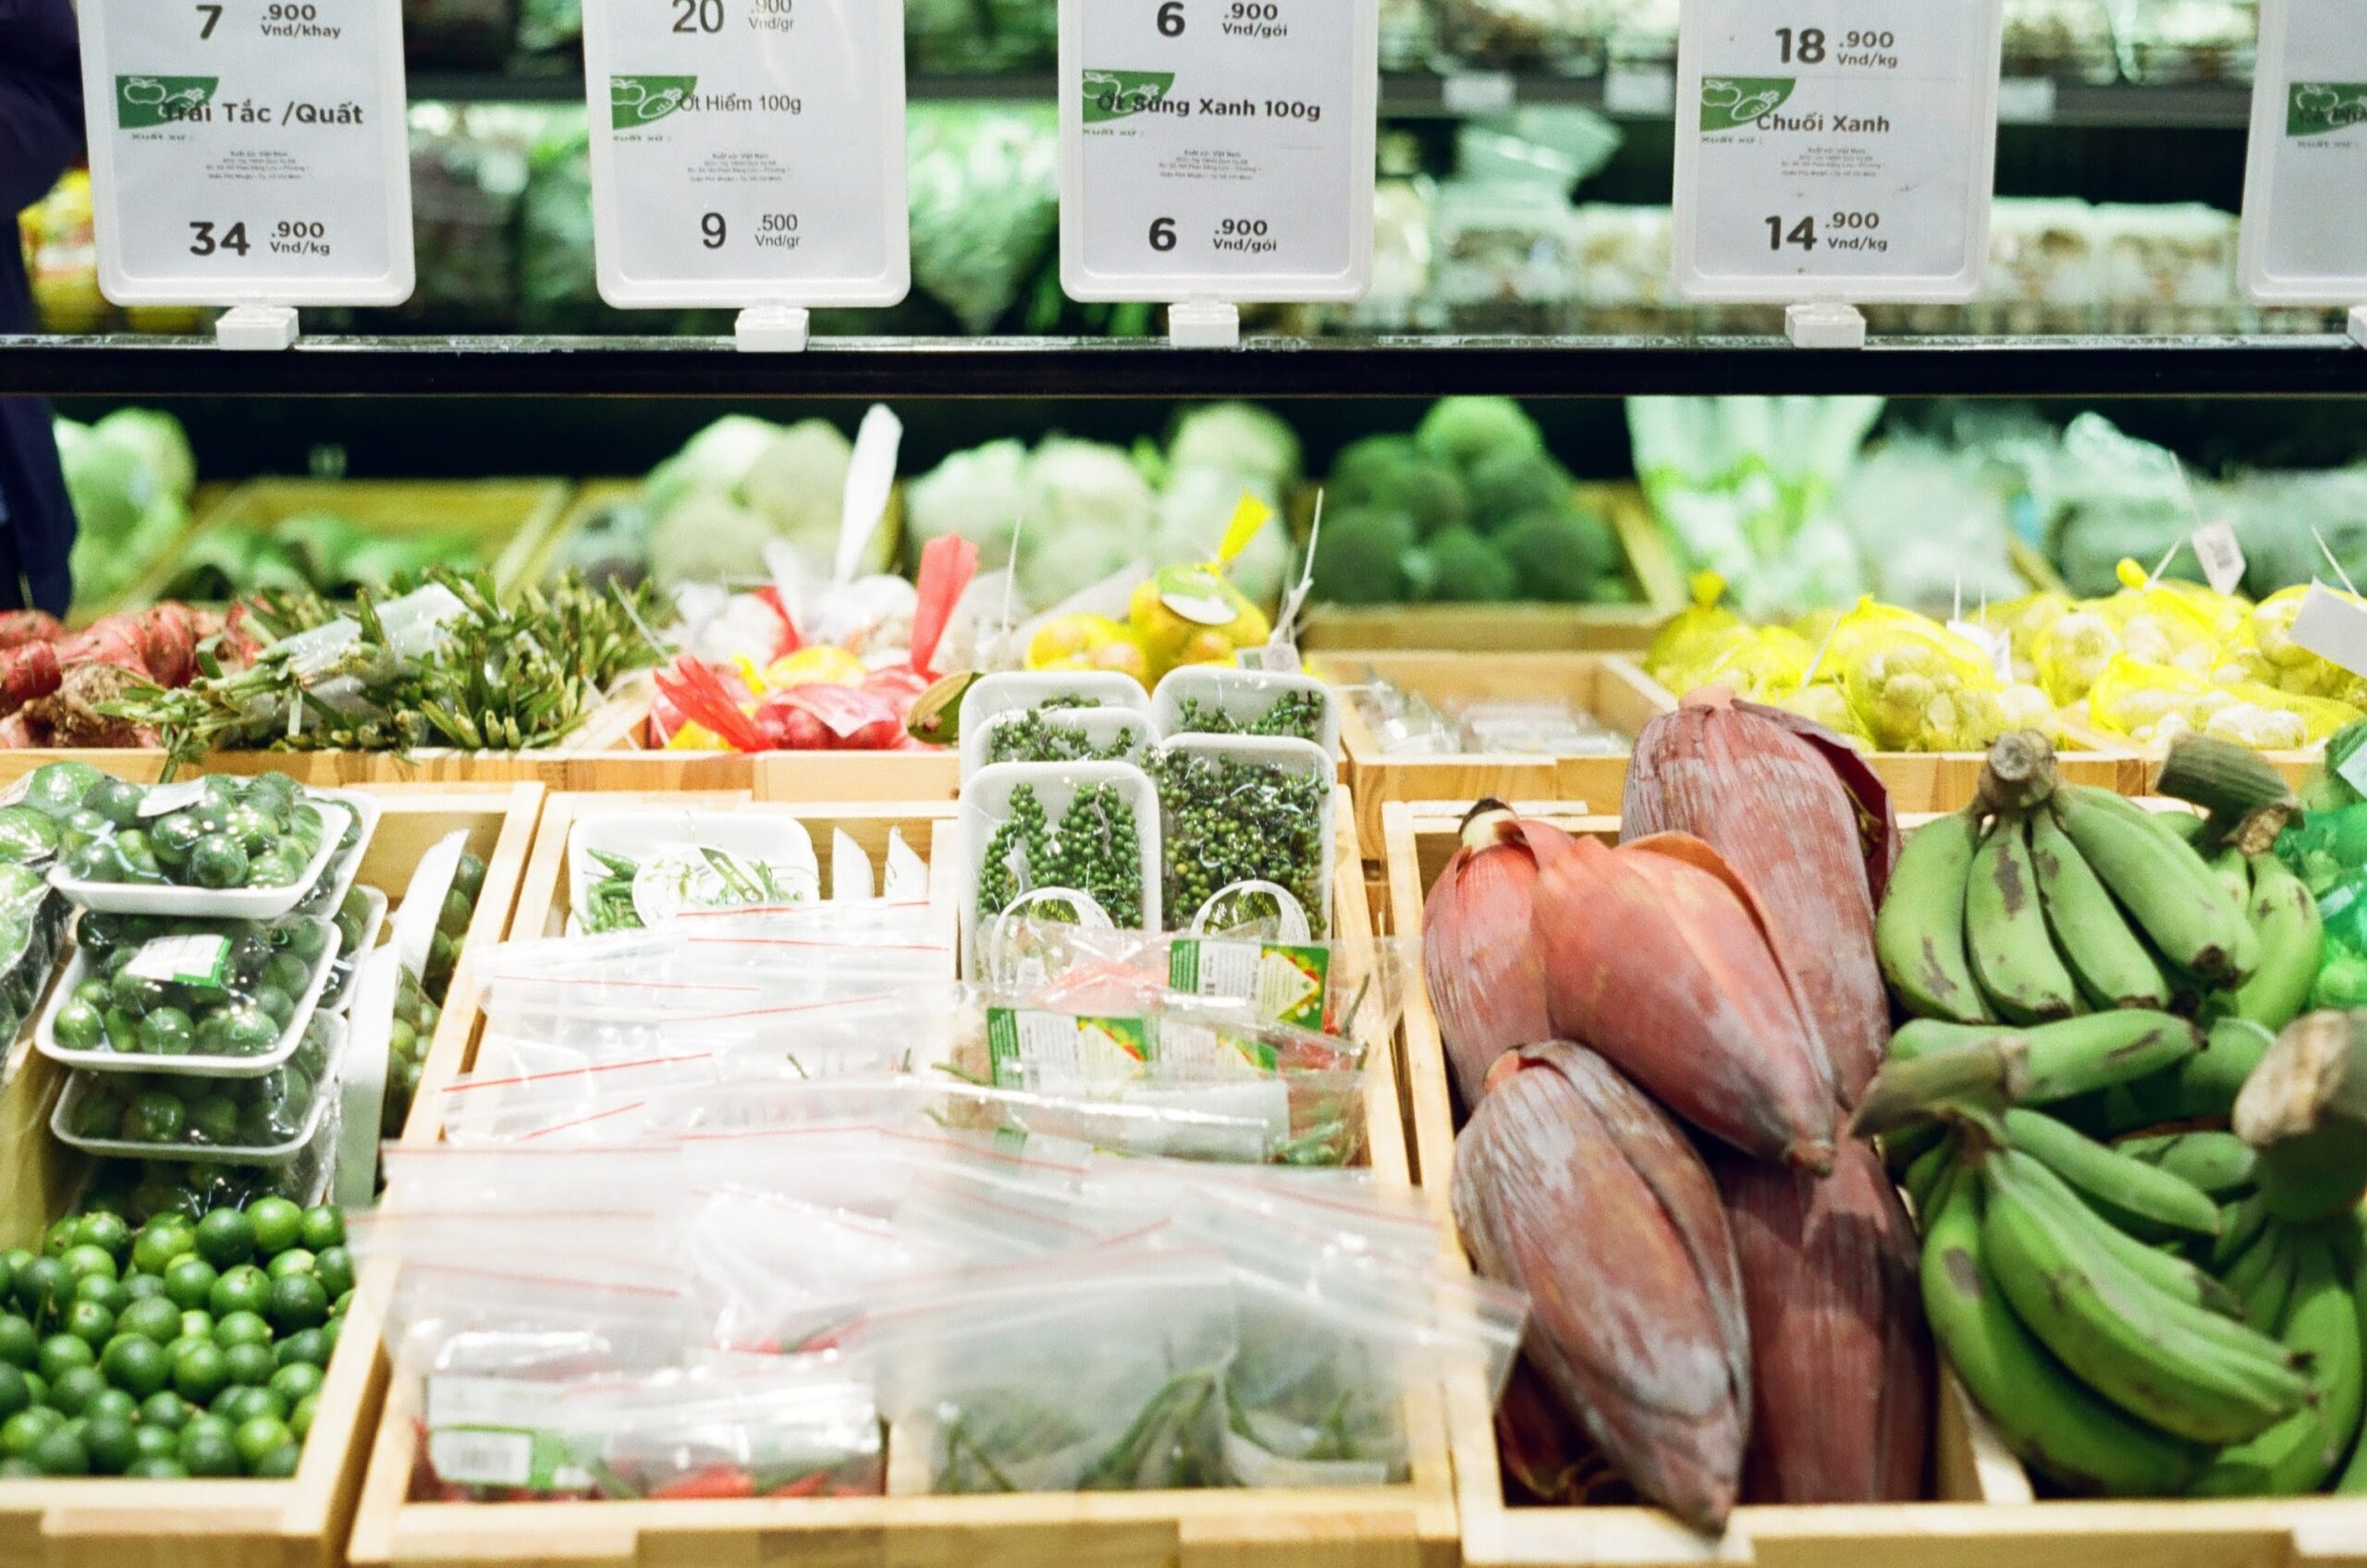 Як зміняться ціни на продукти в супермаркетах